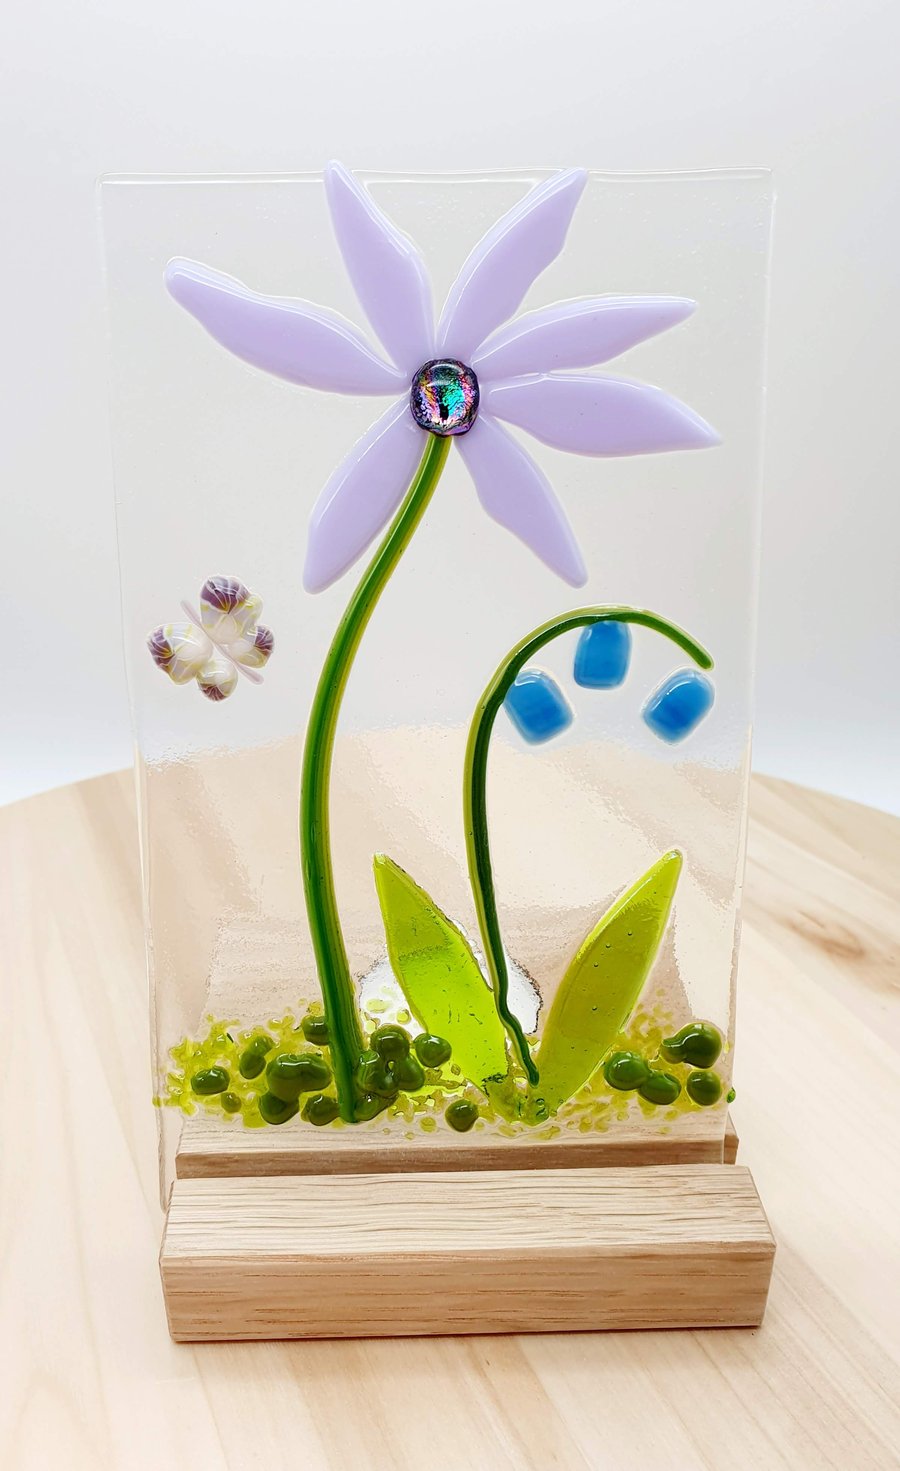 Fused Glass Flower Panel on Wooden Tealight Holder